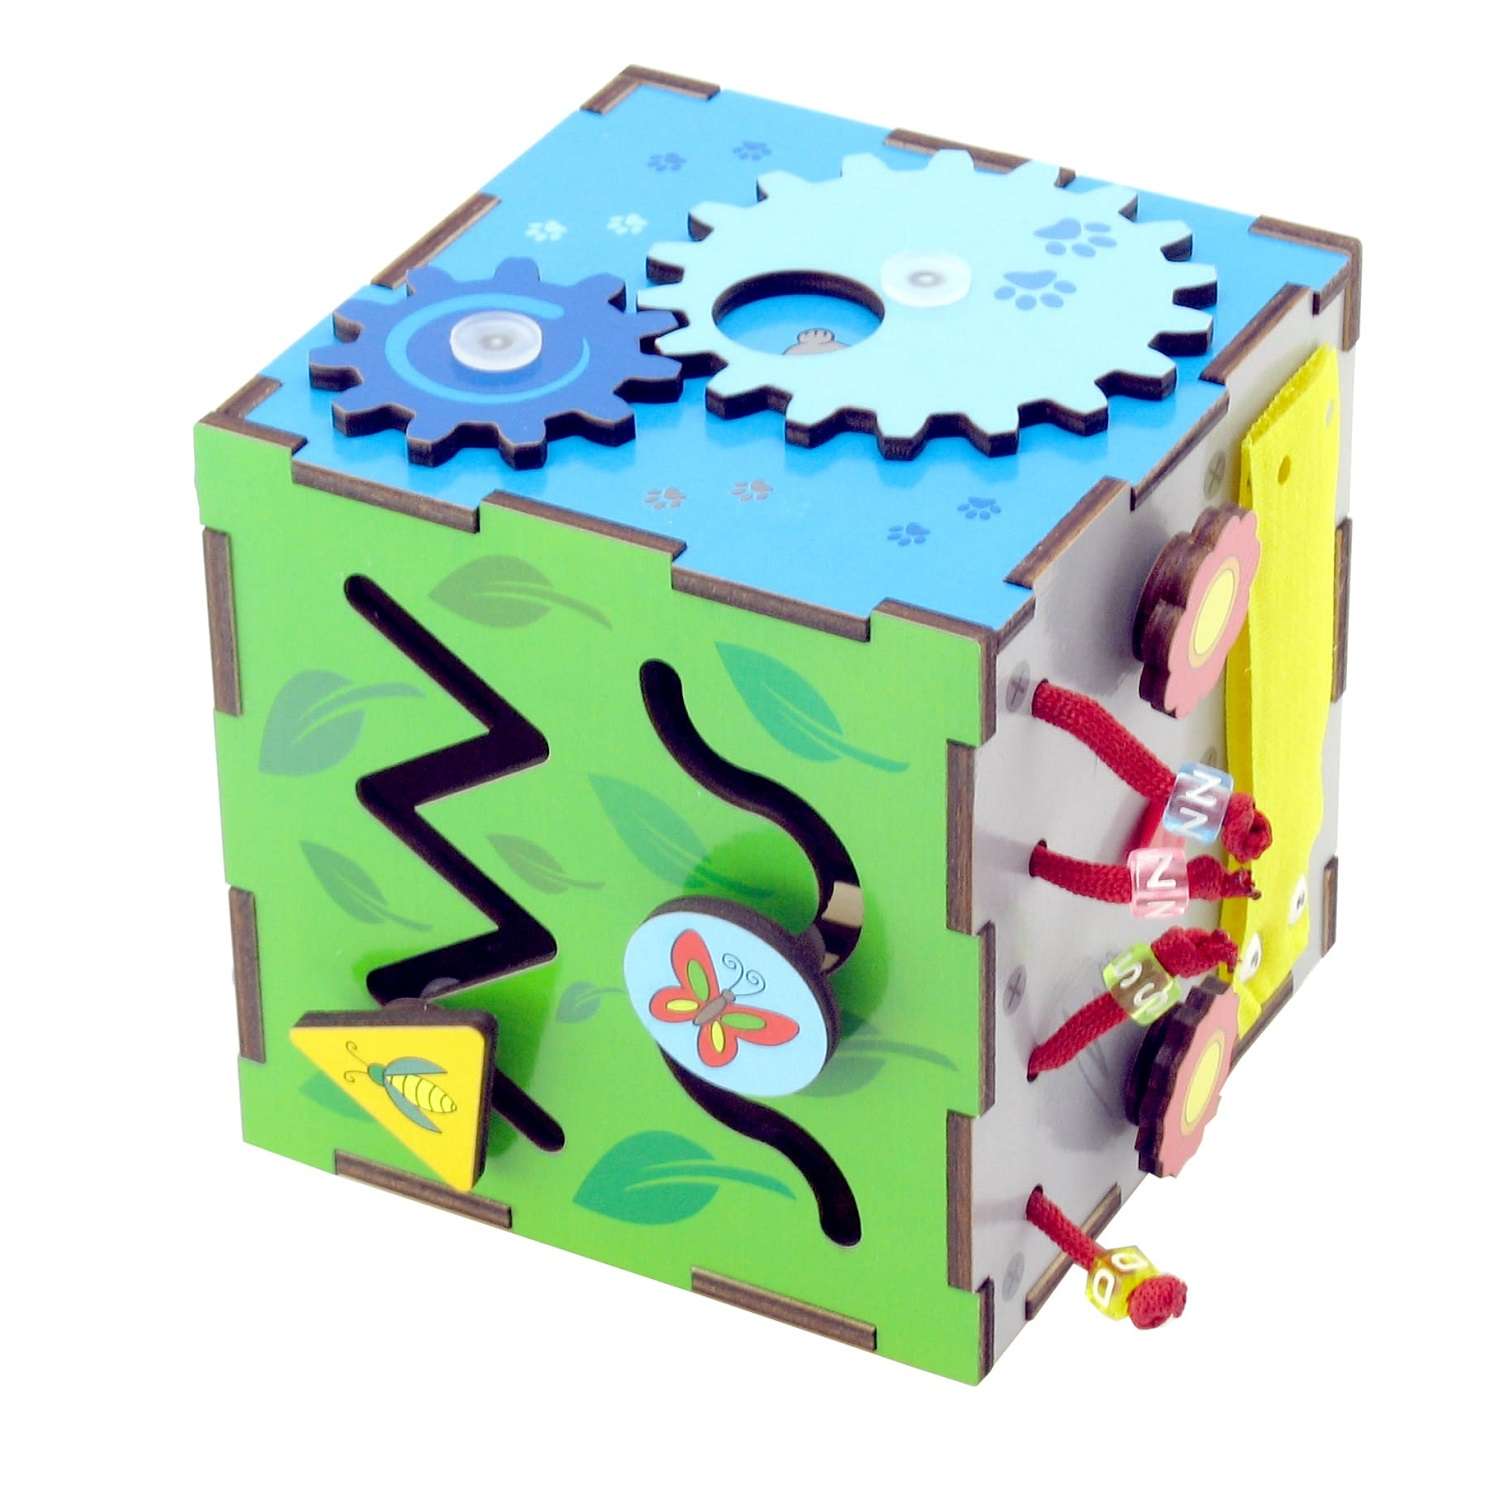 Бизиборд Мастер игрушек Бизи-кубик - фото 1